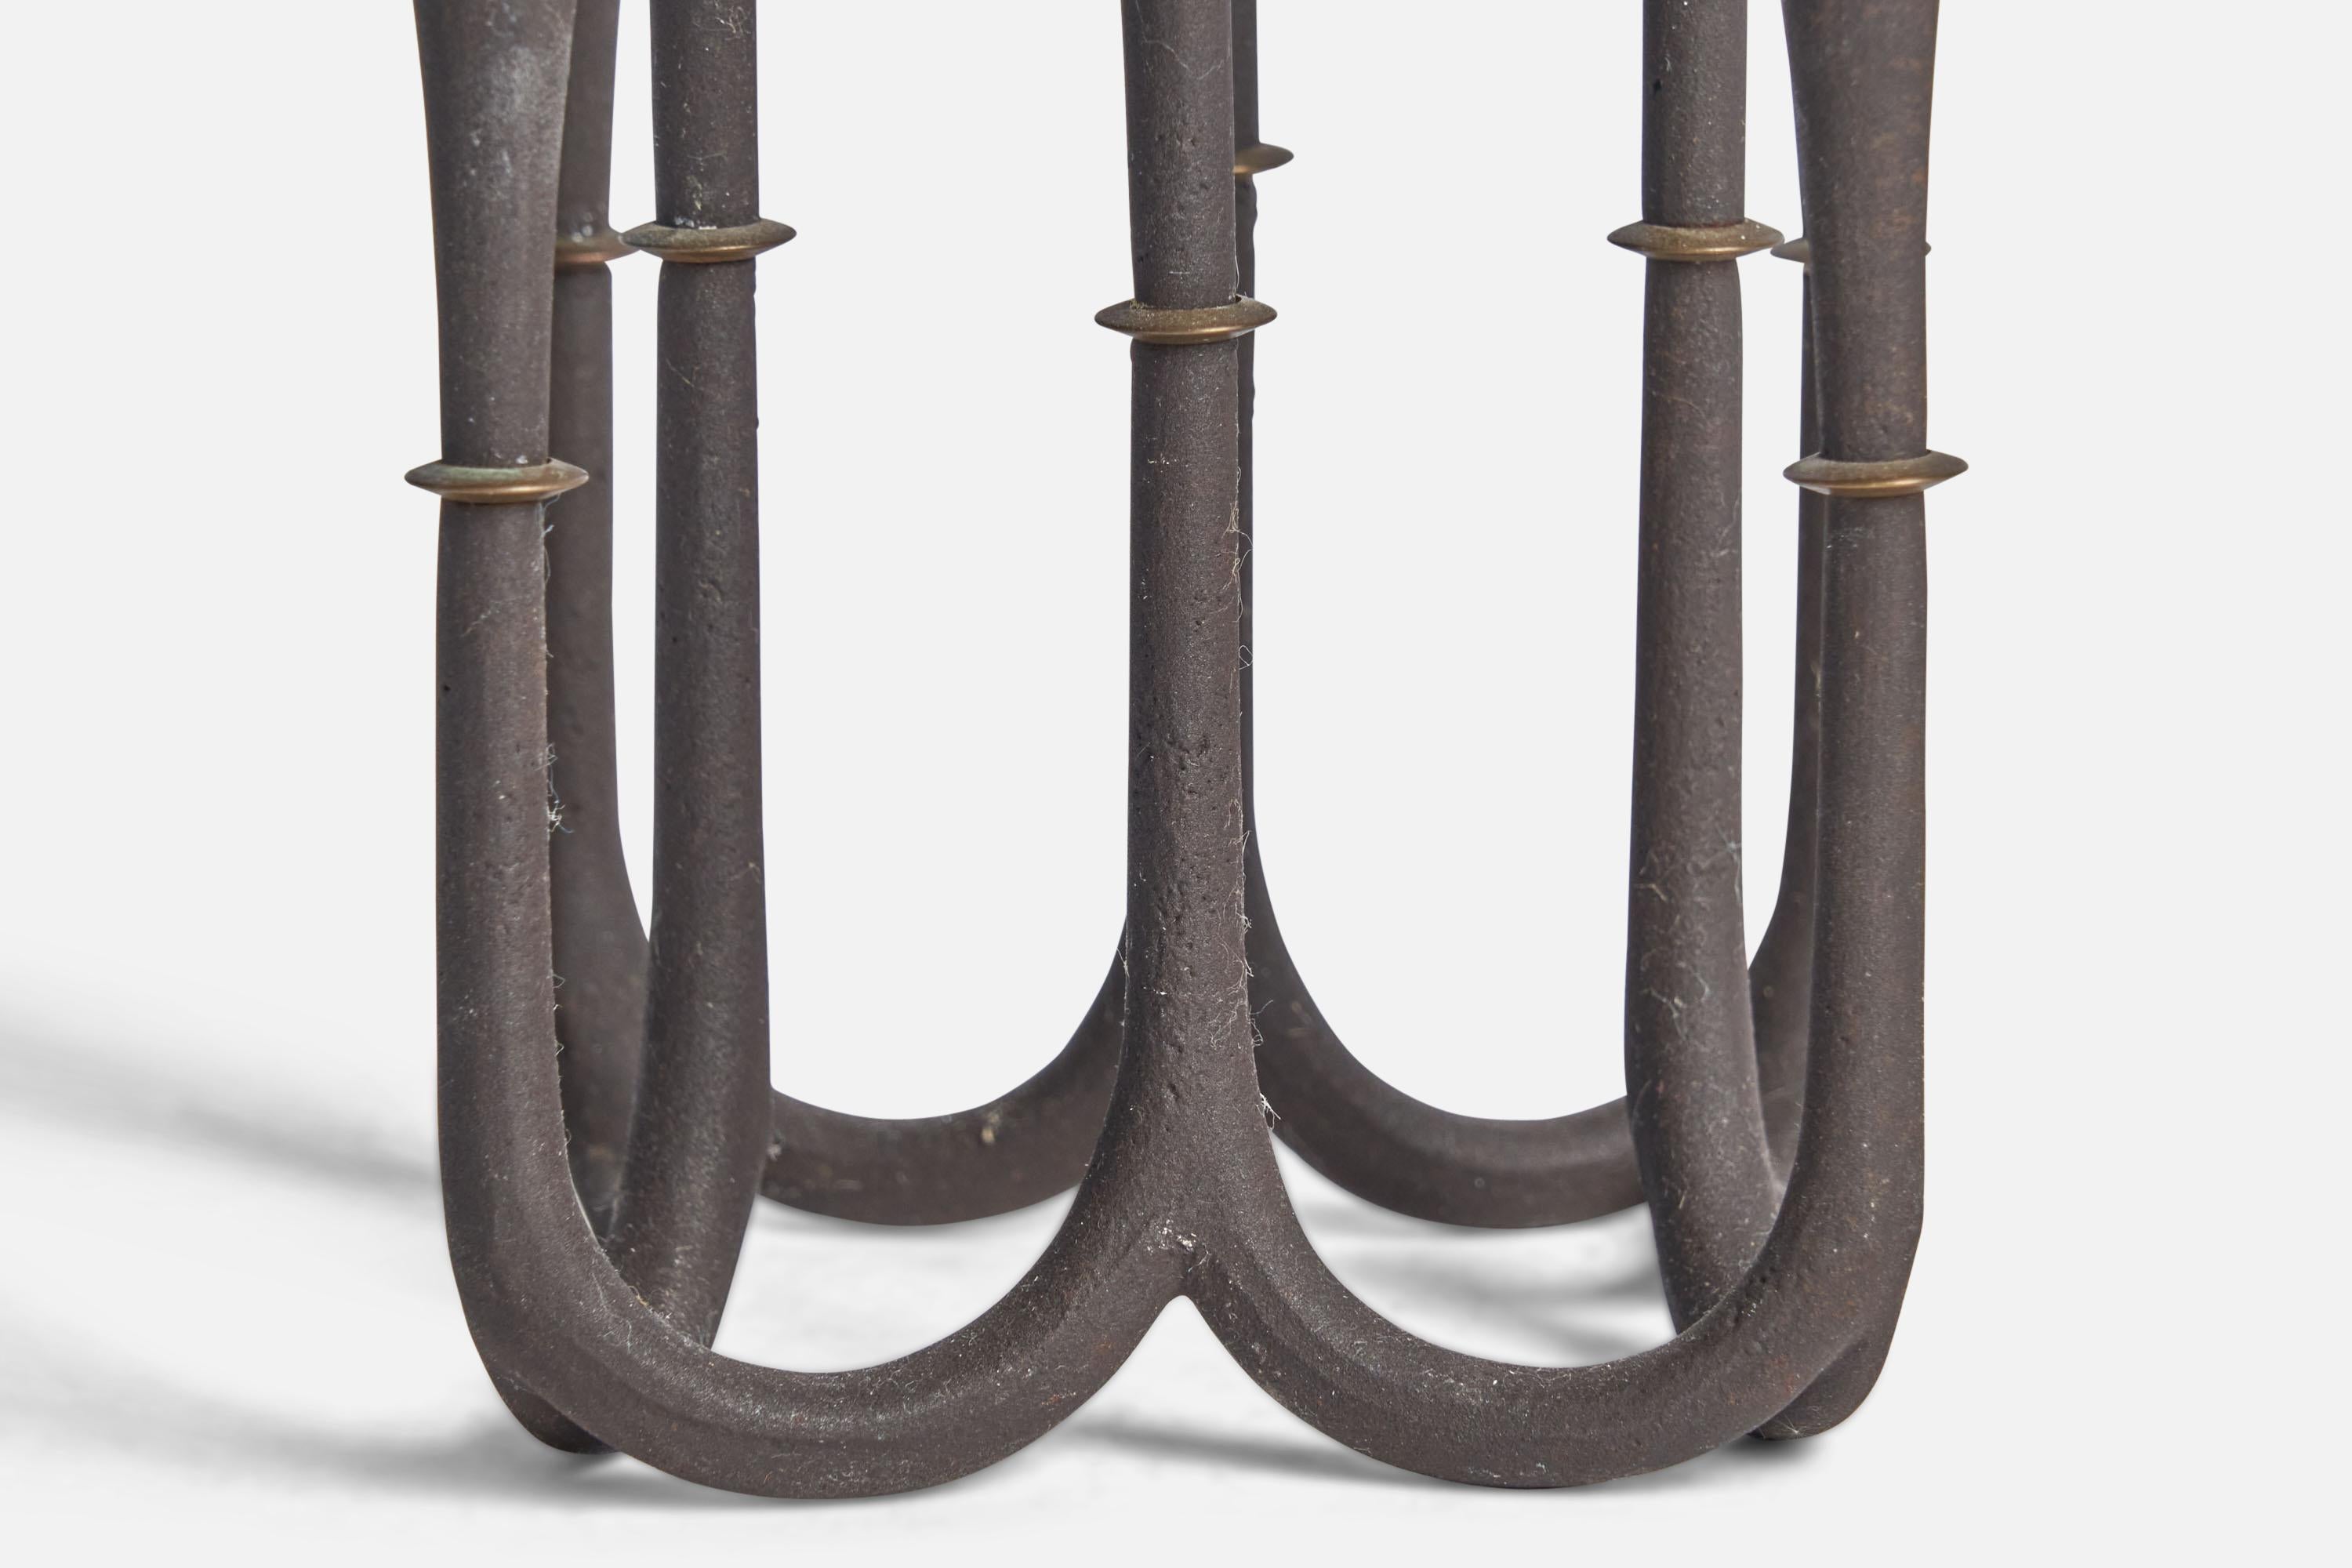 Mid-20th Century Jens Quistgaard, Candelabra, Cast Iron, Brass, Denmark, 1950s For Sale